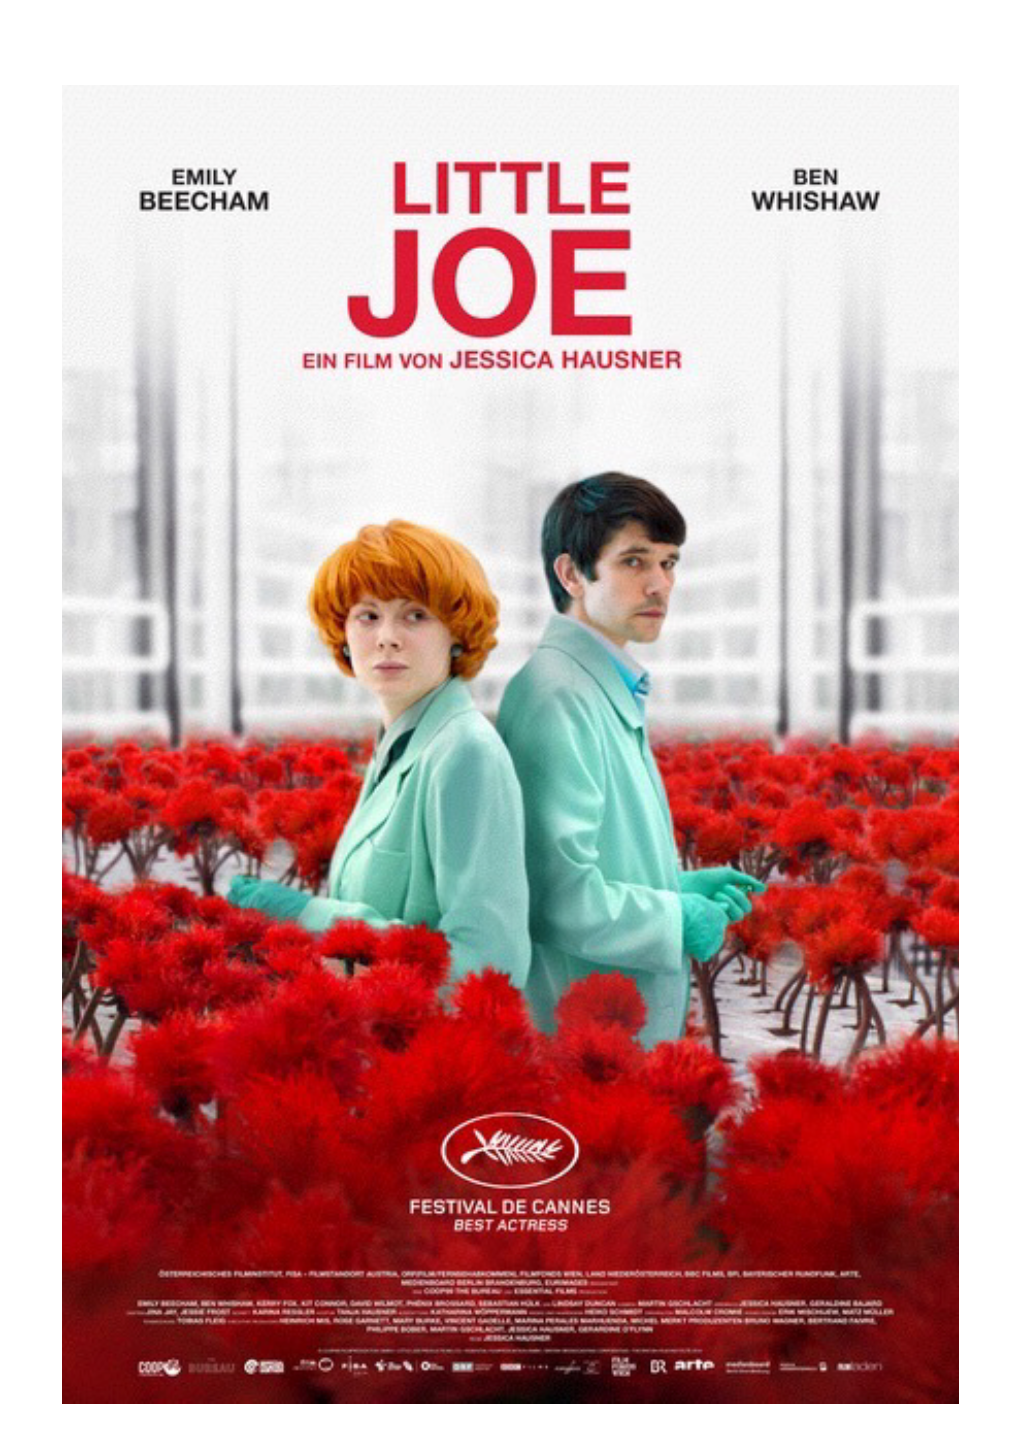 Little Joe Ein Film Von Jessica Hausner